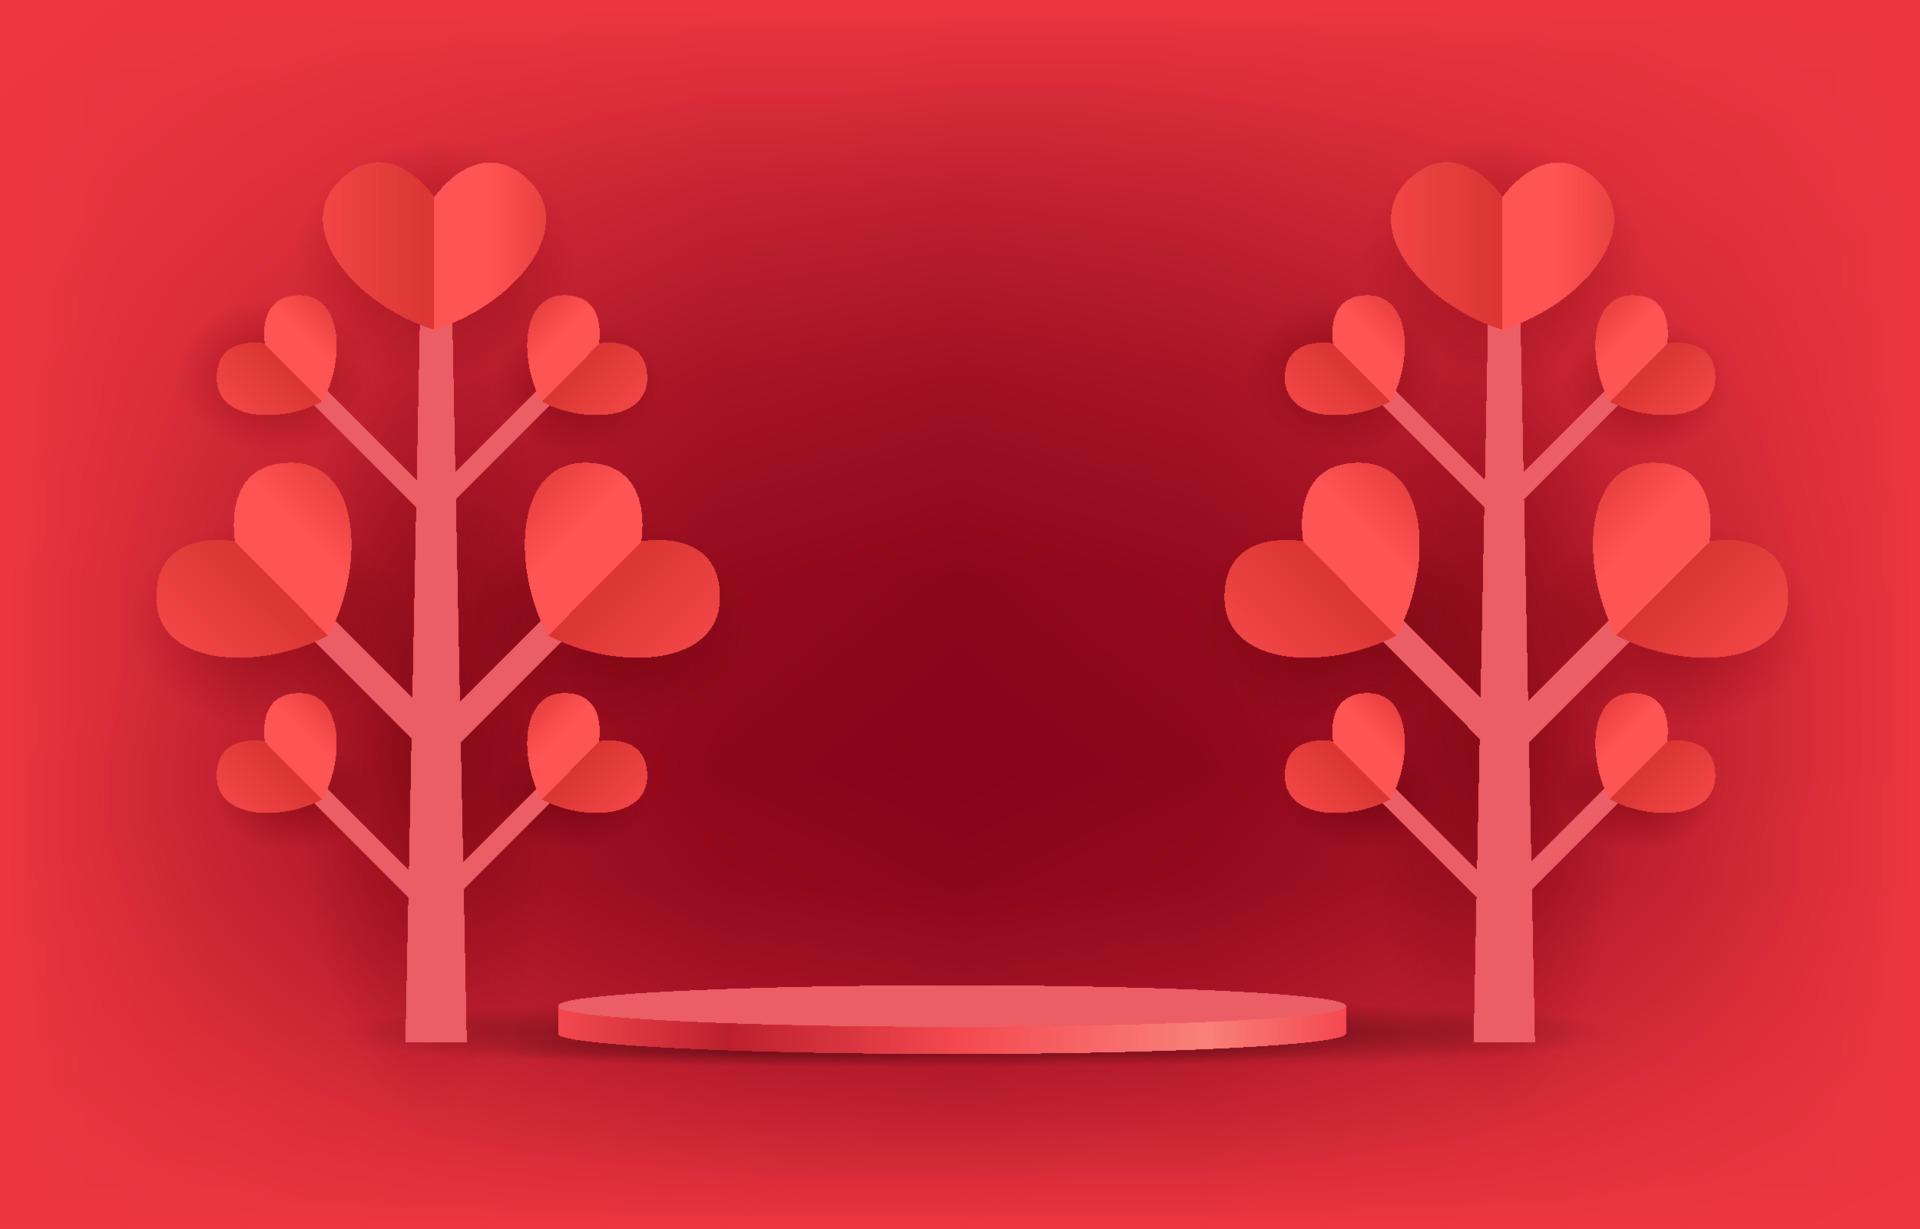 röd podium illustration vektor koncept kärlek eller valentine. dekorera med hjärtan. design för bakgrund, webb, app, banner, mall, marknadsföring. tom cylinderpodium för produkt.